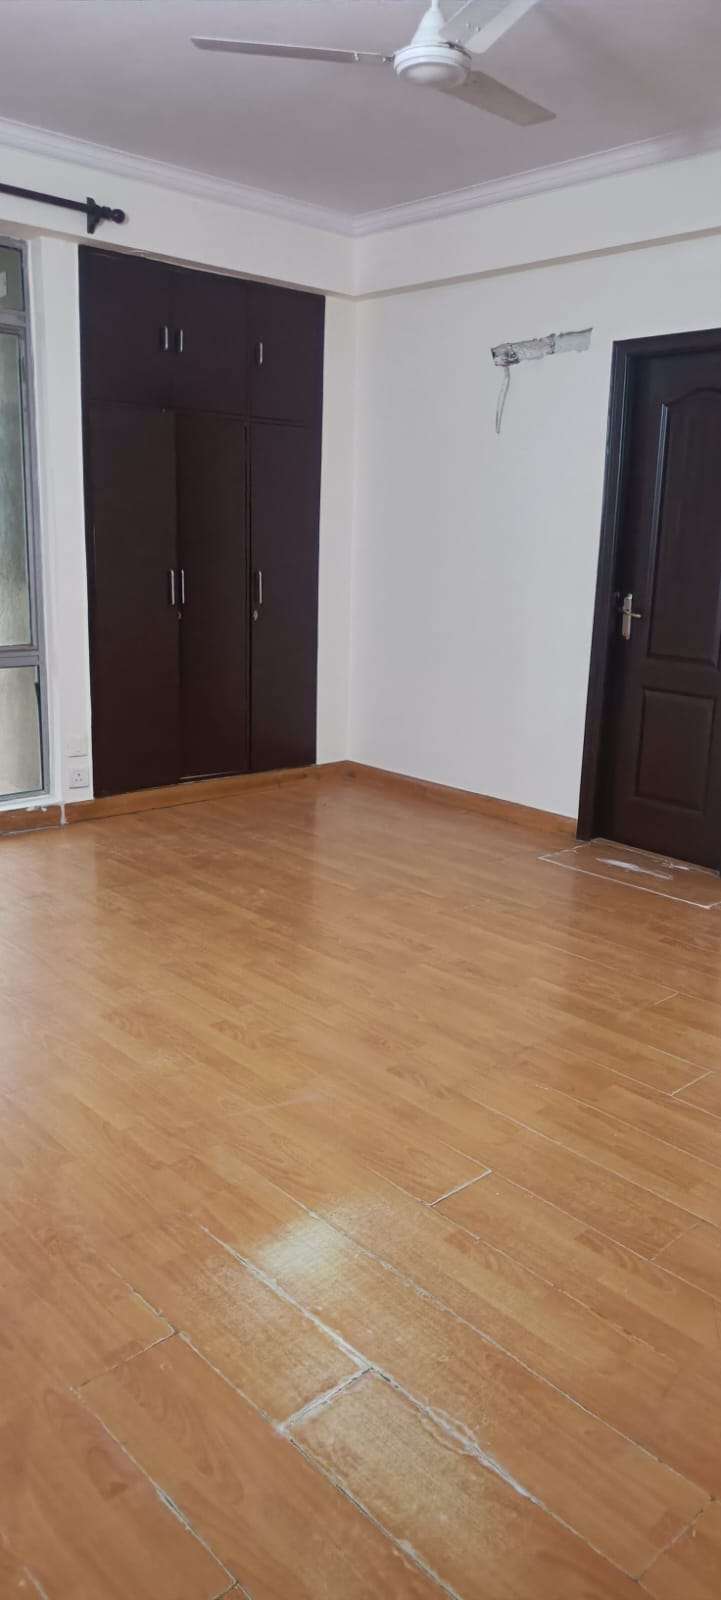 2 BHK Apartment For Rent in Bapu Nagar Jaipur 6549043